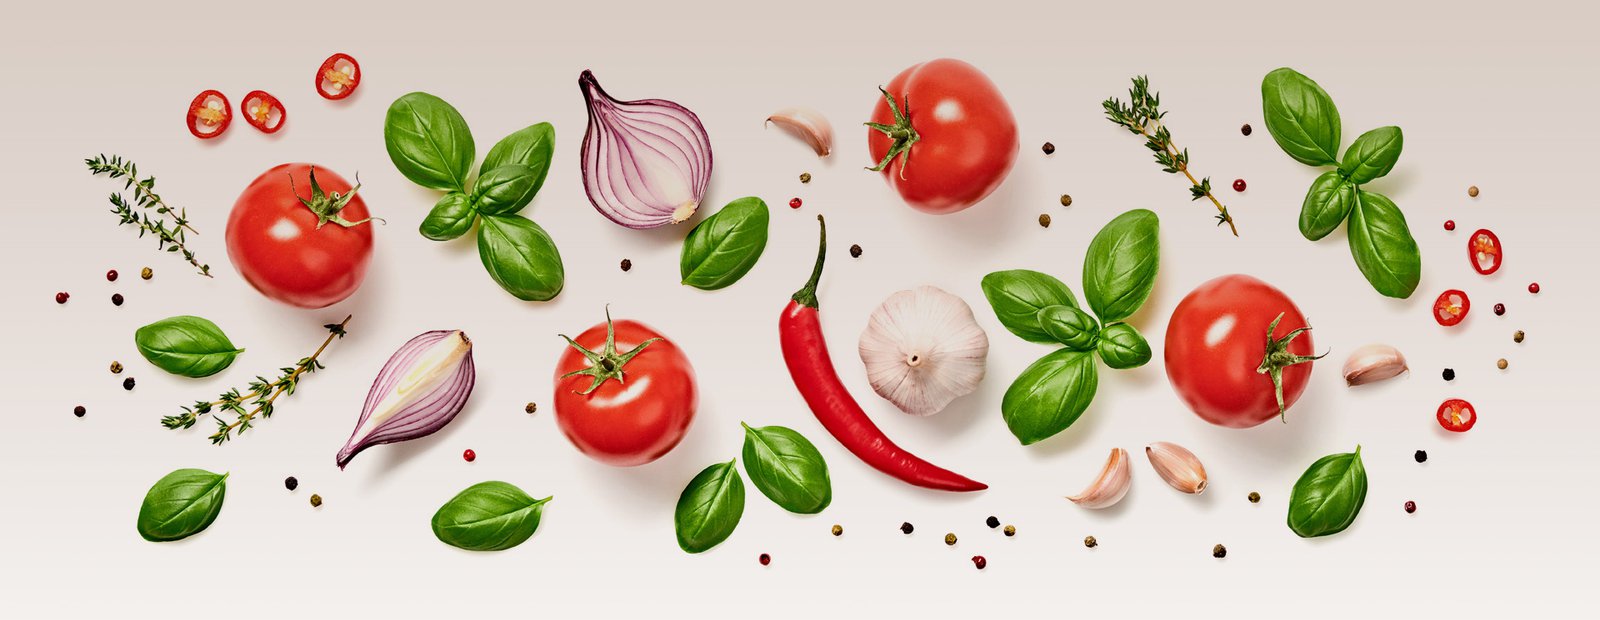 El tomate y la dieta mediterránea